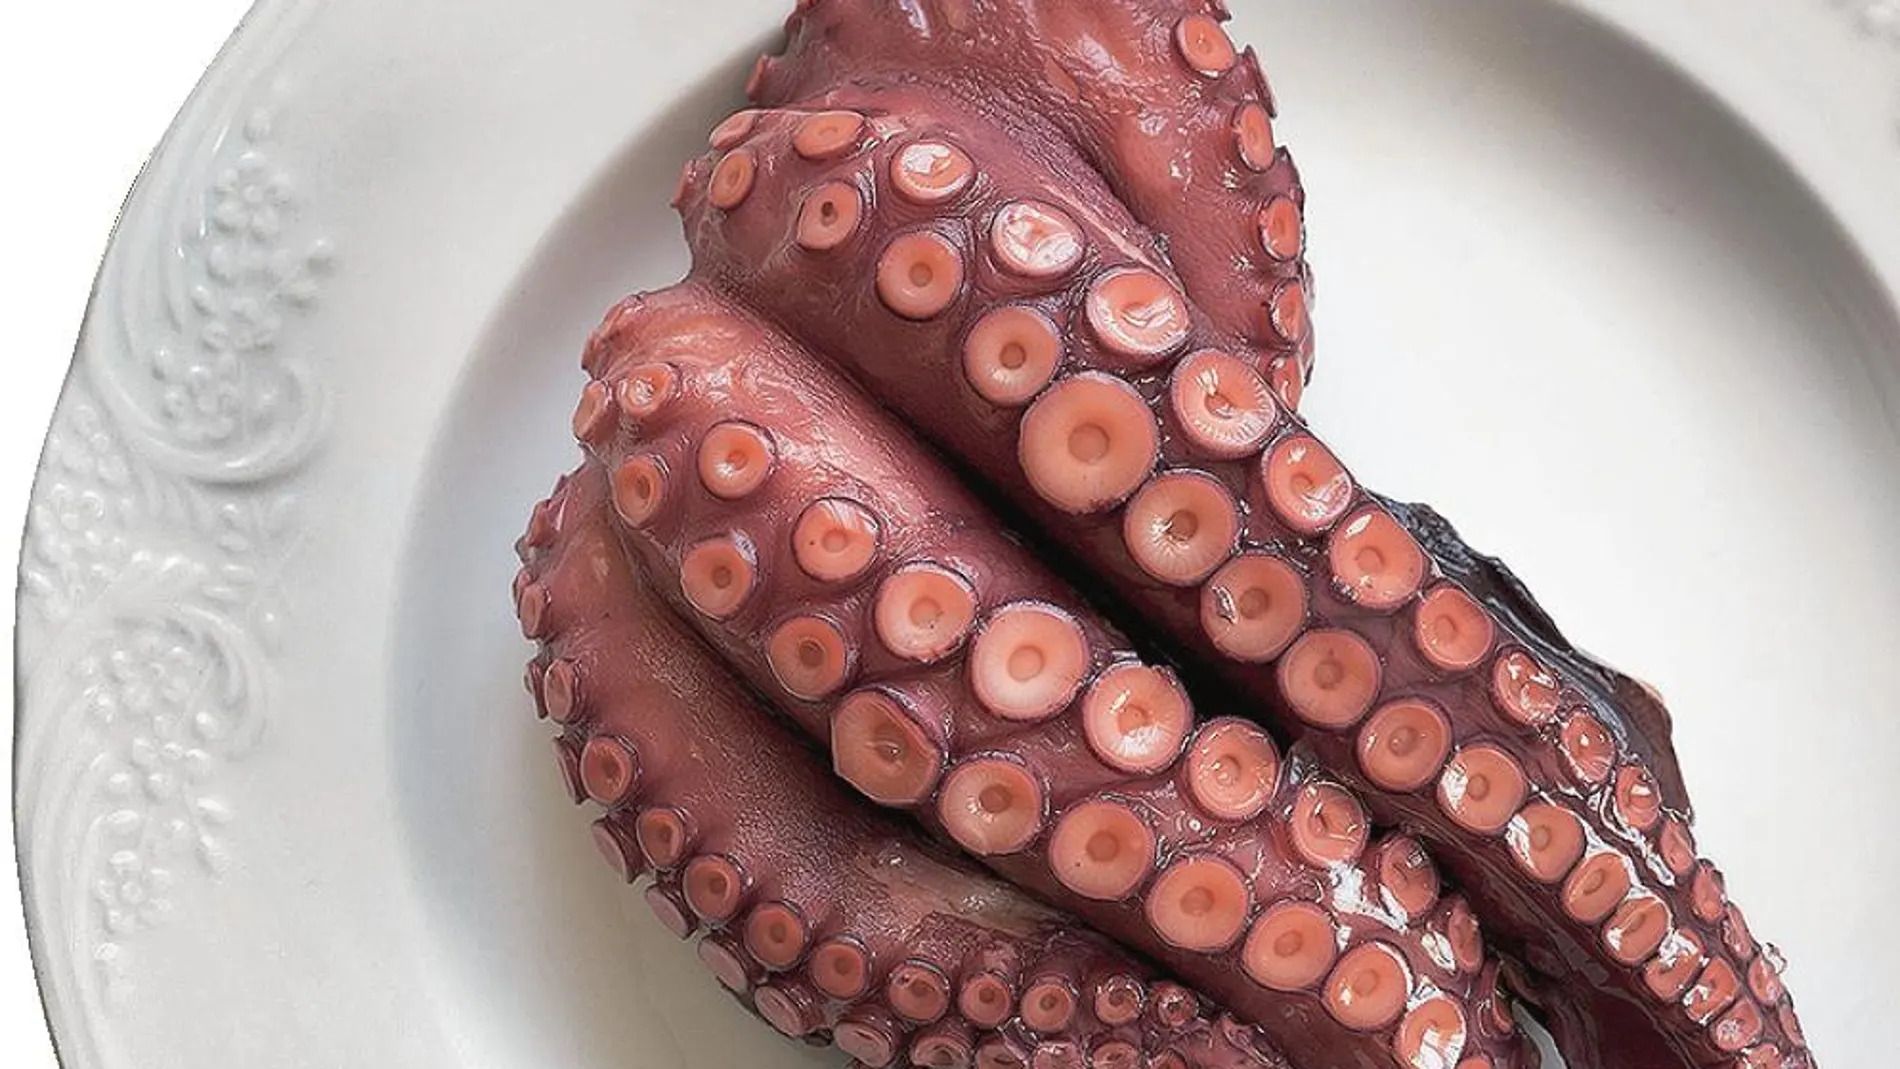 Uno de los cocineros experimentó lo que era meterse los tentáculos de un pulpo vivo en la boca. ¿El resultado? Le creó repulsión, aunque la imagen del producto fuera la misma